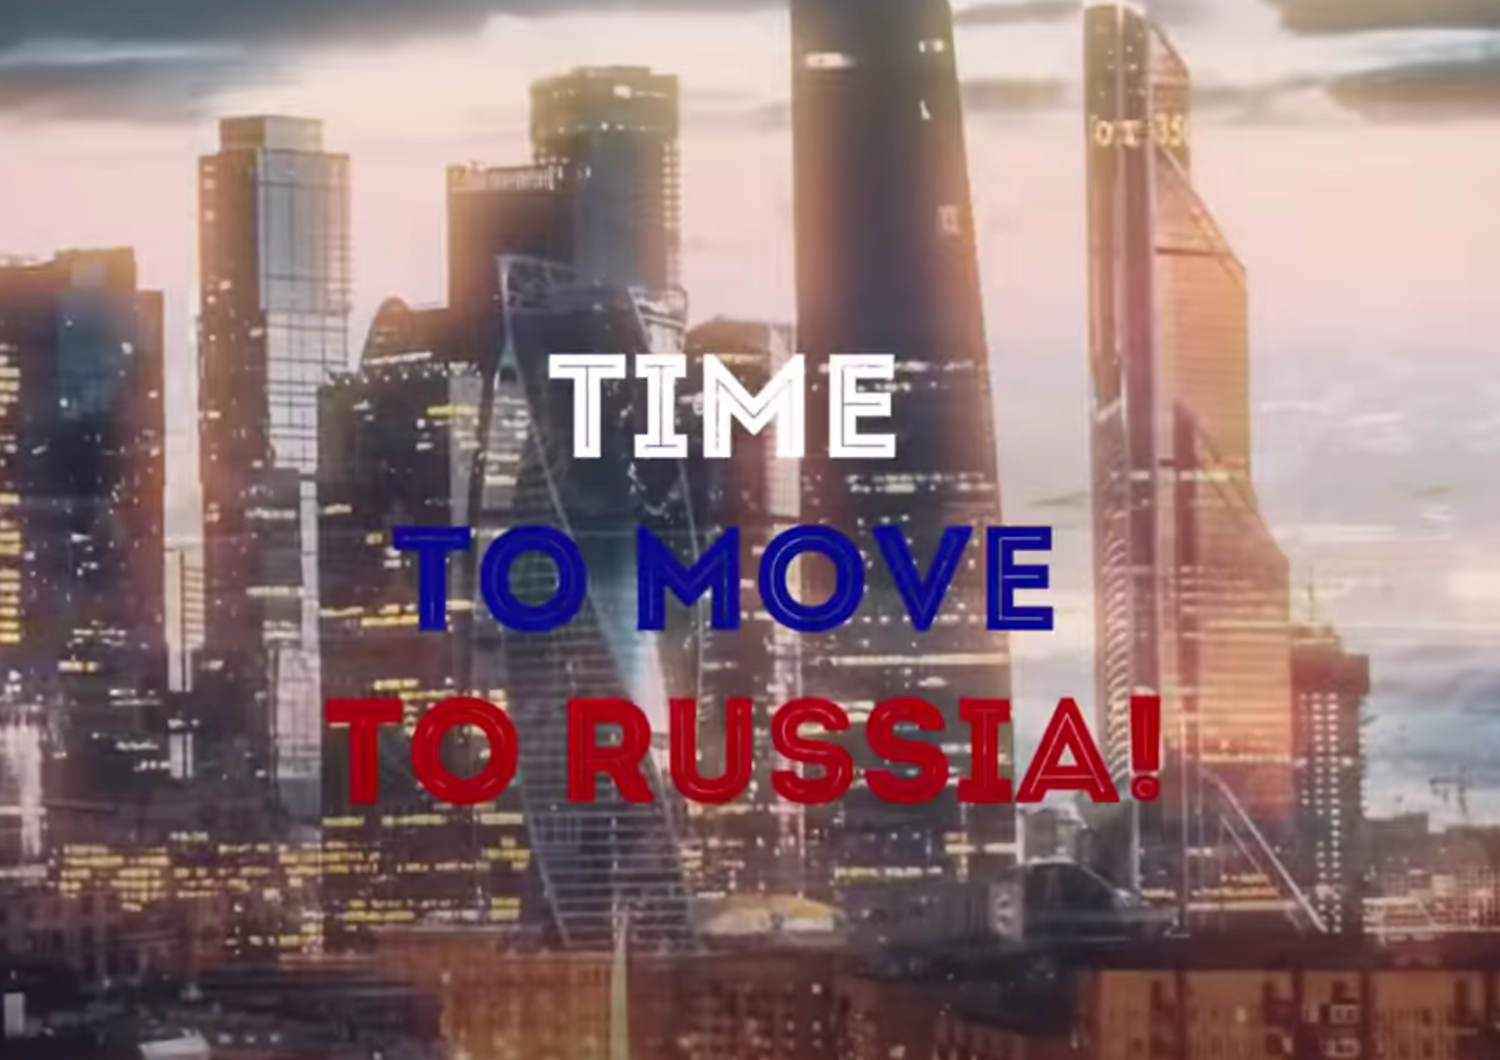 Immagine del video di propaganda russa&nbsp;